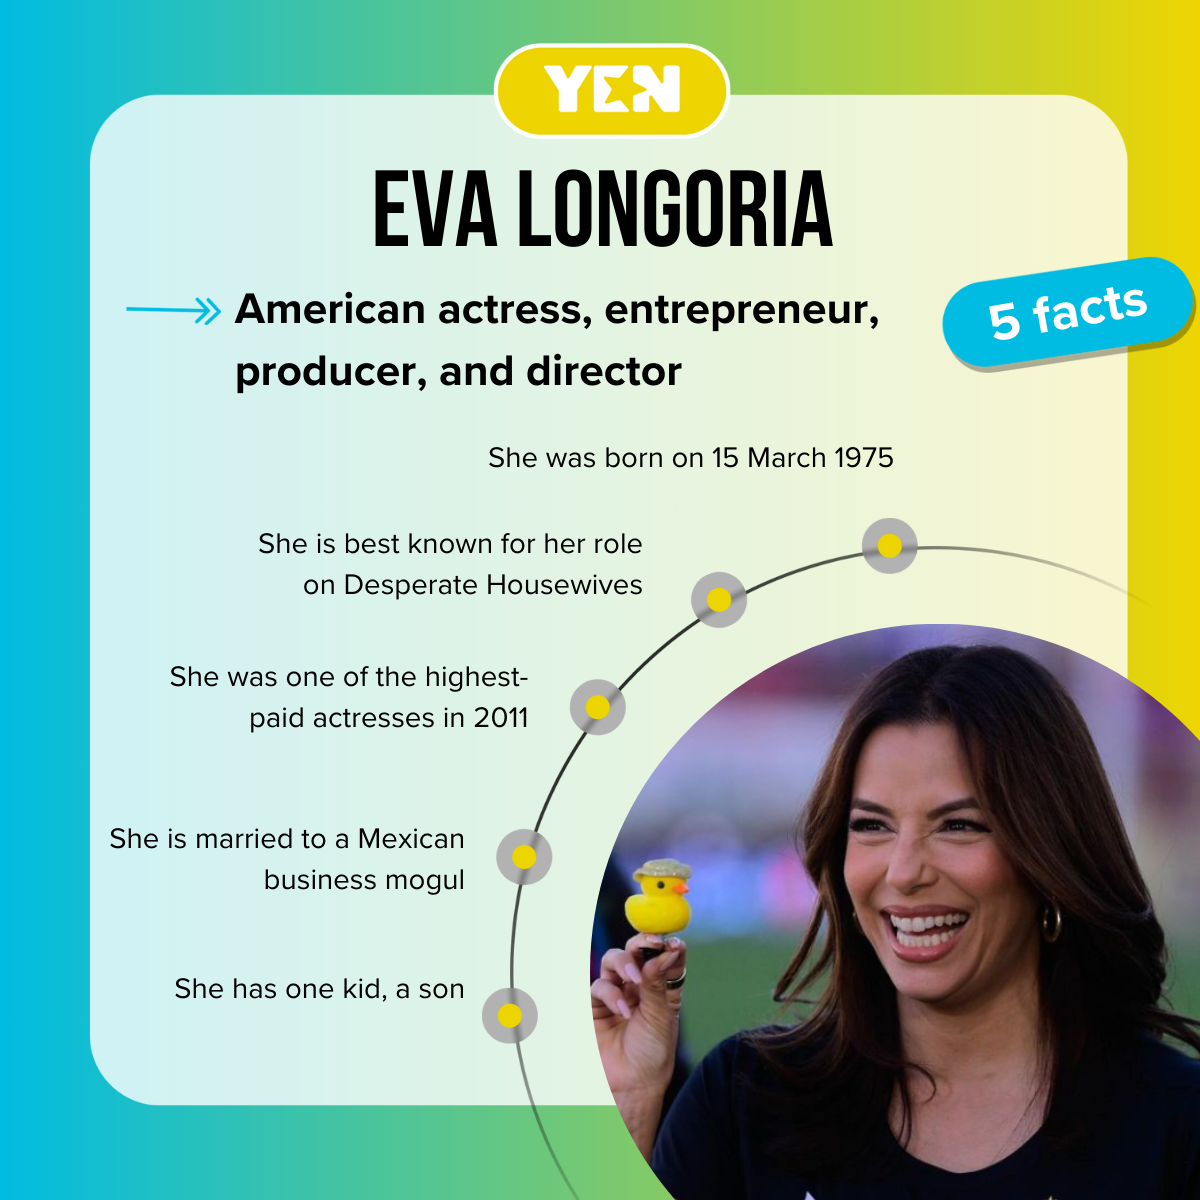 Facts about Eva Longoria